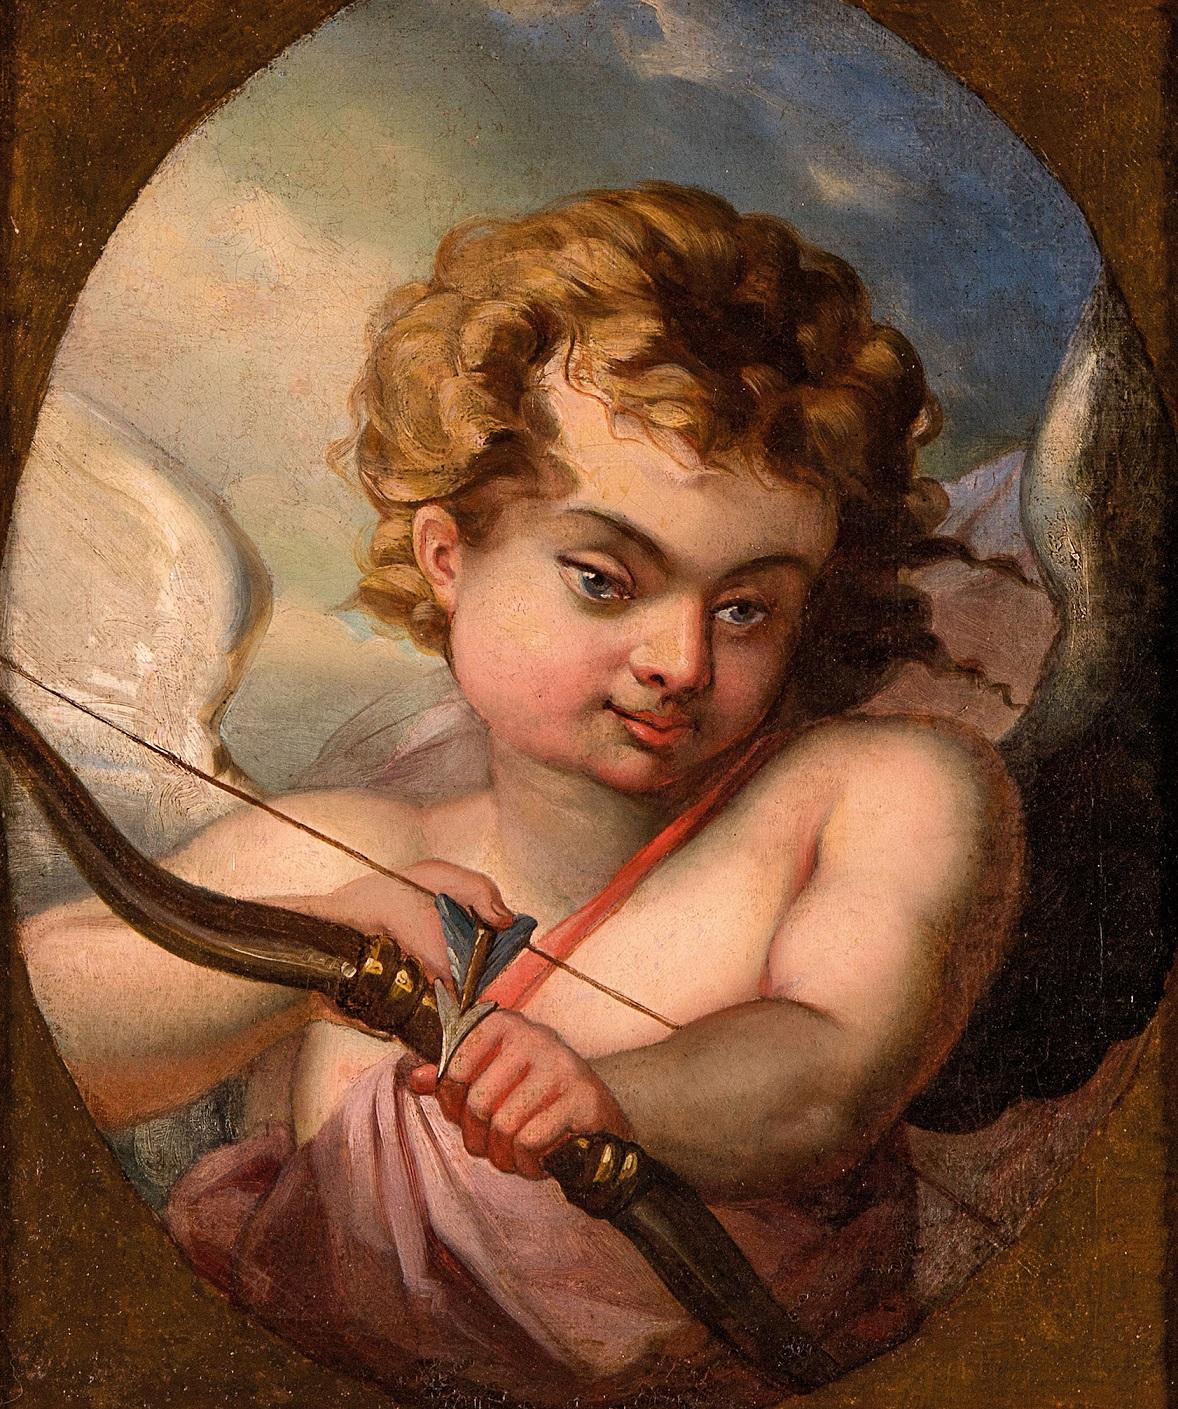 Cupid Paint Oil on canvas France Neo classicism Art Quality Love 18th century - Painting by Entourage de François Boucher (Paris 1703 - 1770)